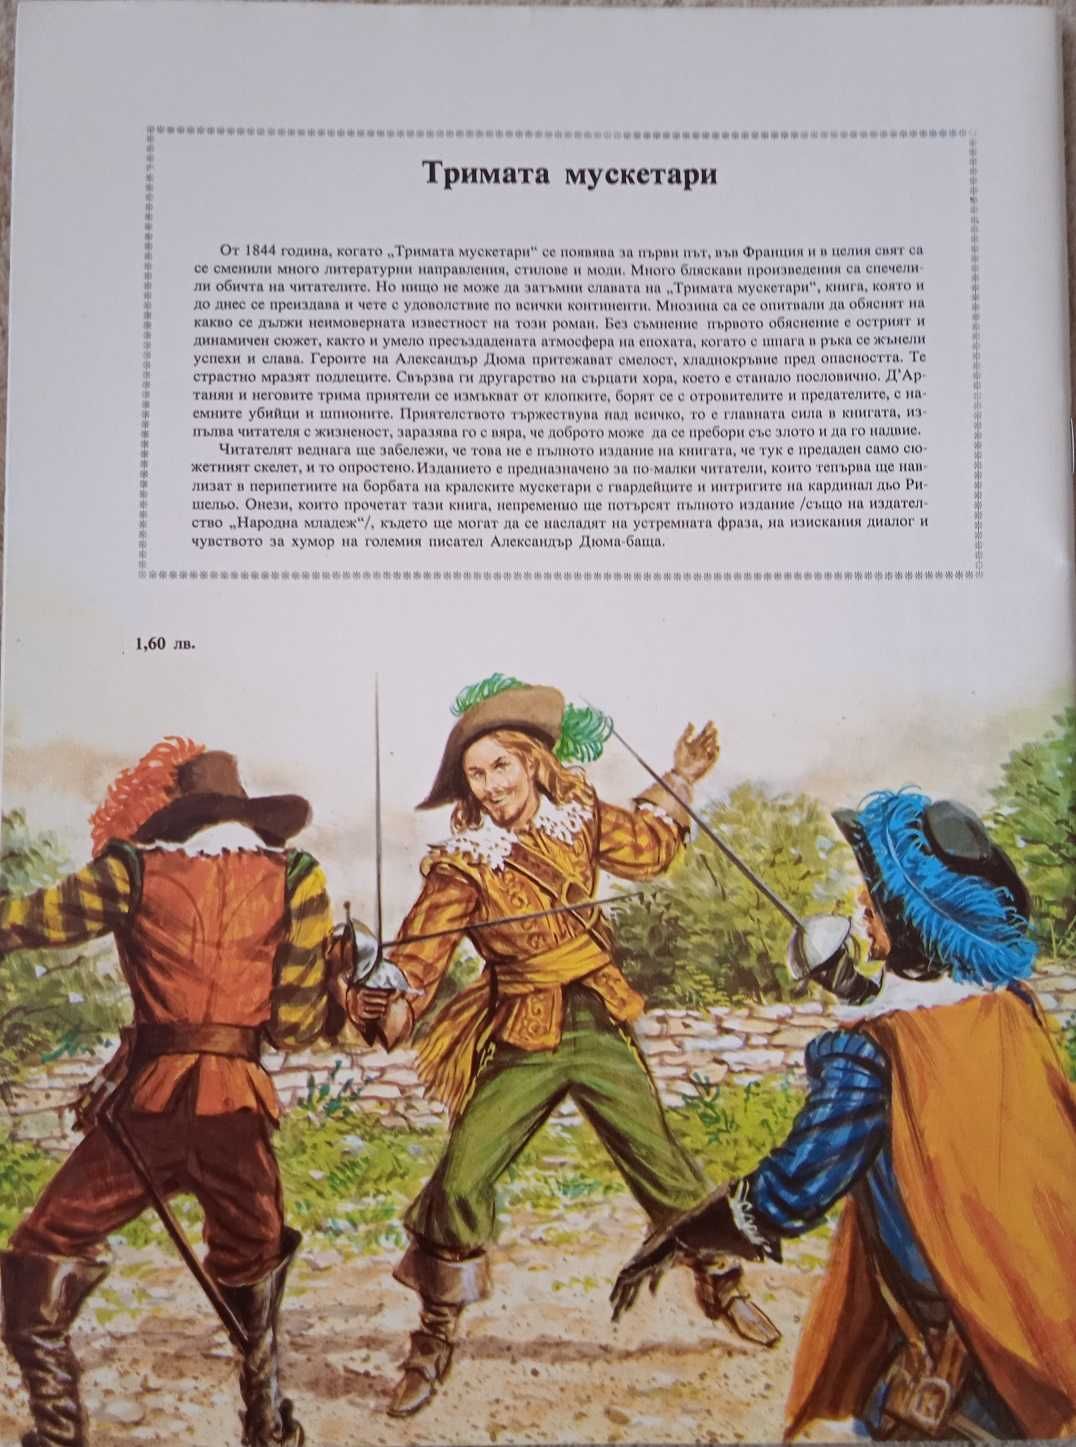 Вълшебният пояс, Мюнхаузен, Тримата мускетари и др.- антикварни книги